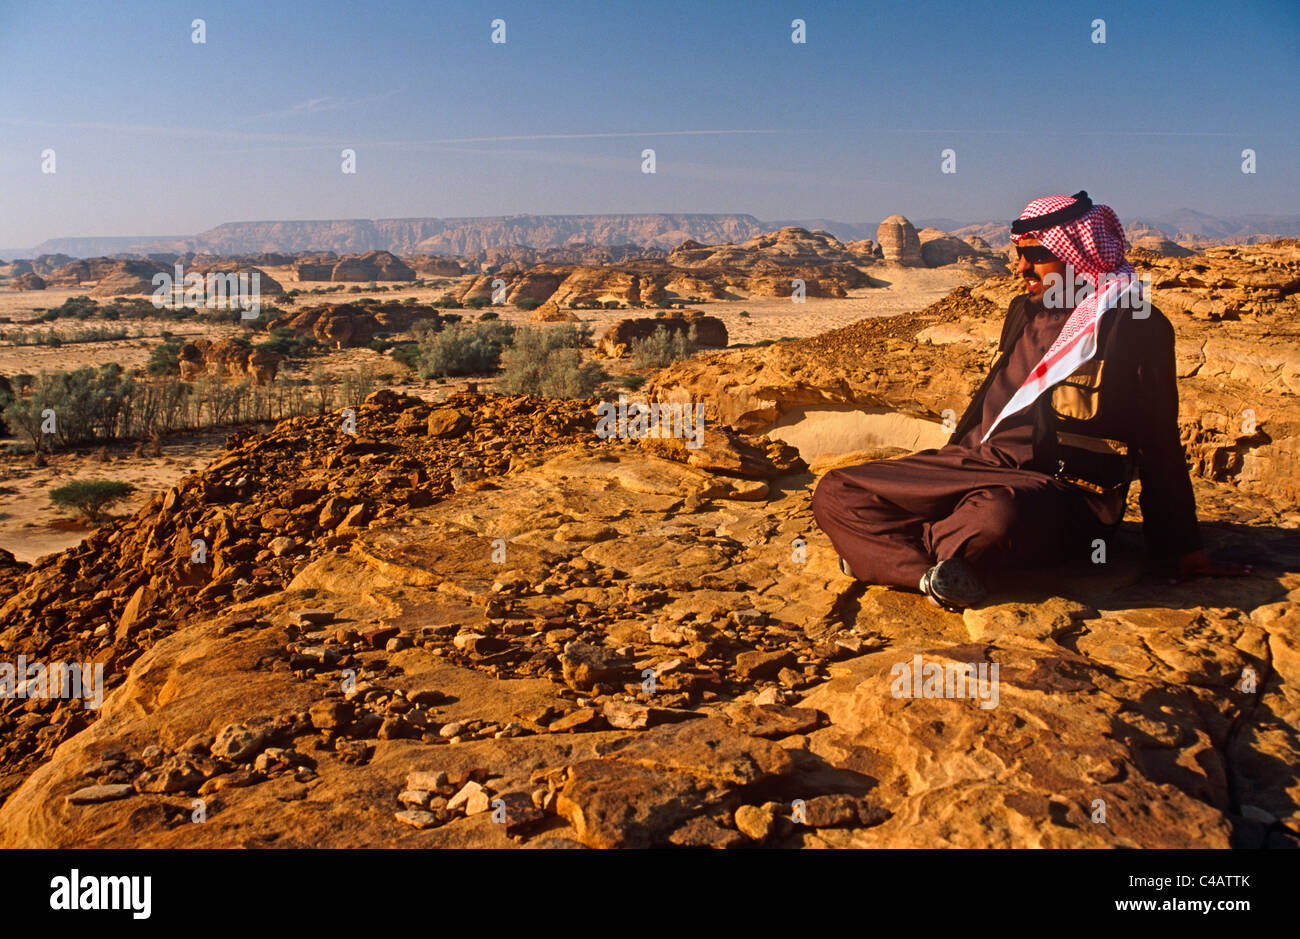 L'Arabie saoudite, Médine, nr. Madain Saleh, Al-Ula (aka Hegra). Un Saoudien en admirant les falaises et affleurements rocheux stark Banque D'Images